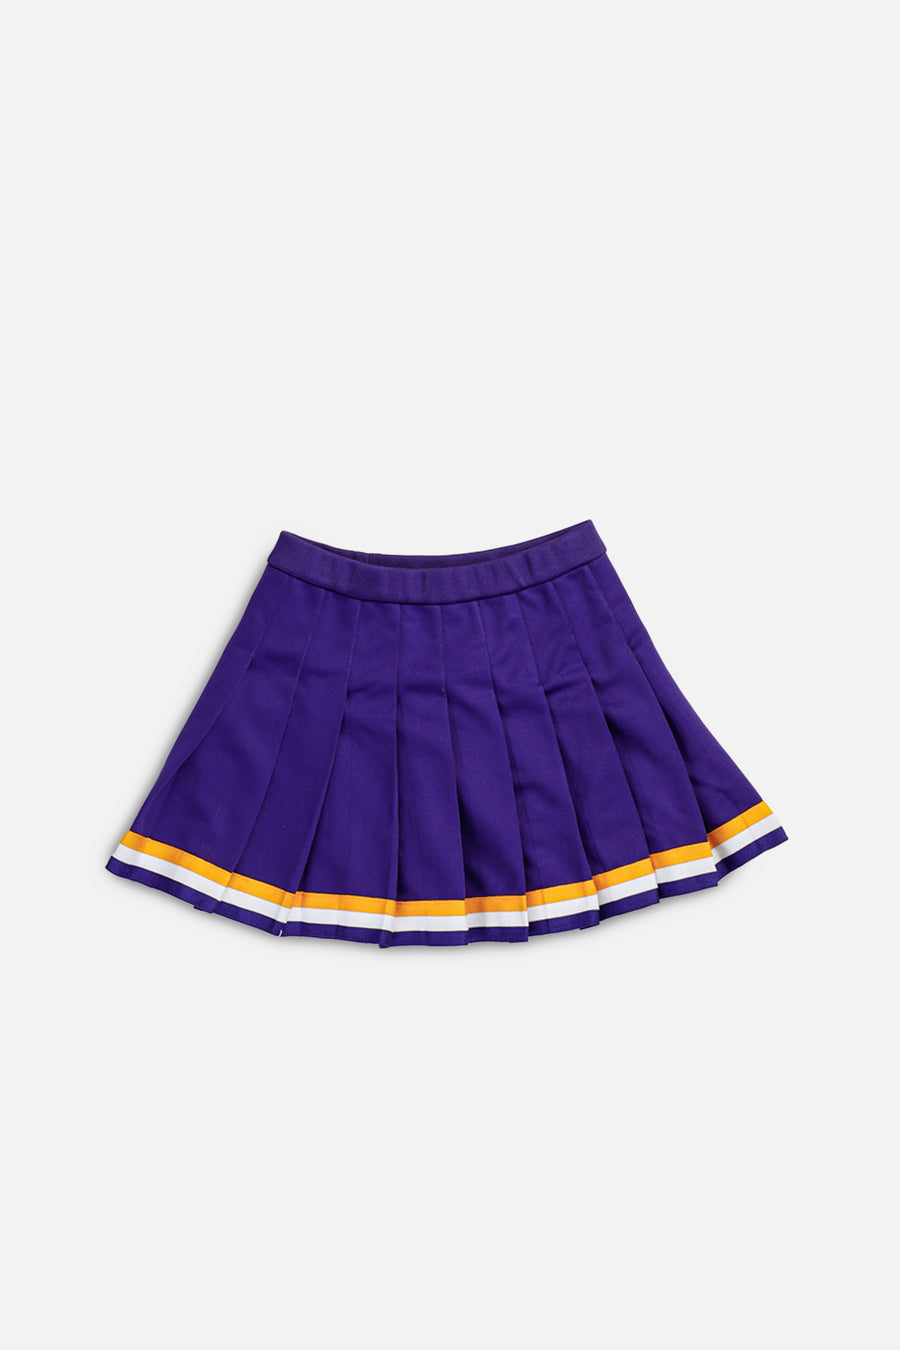 Vintage Pleated Skirt - M